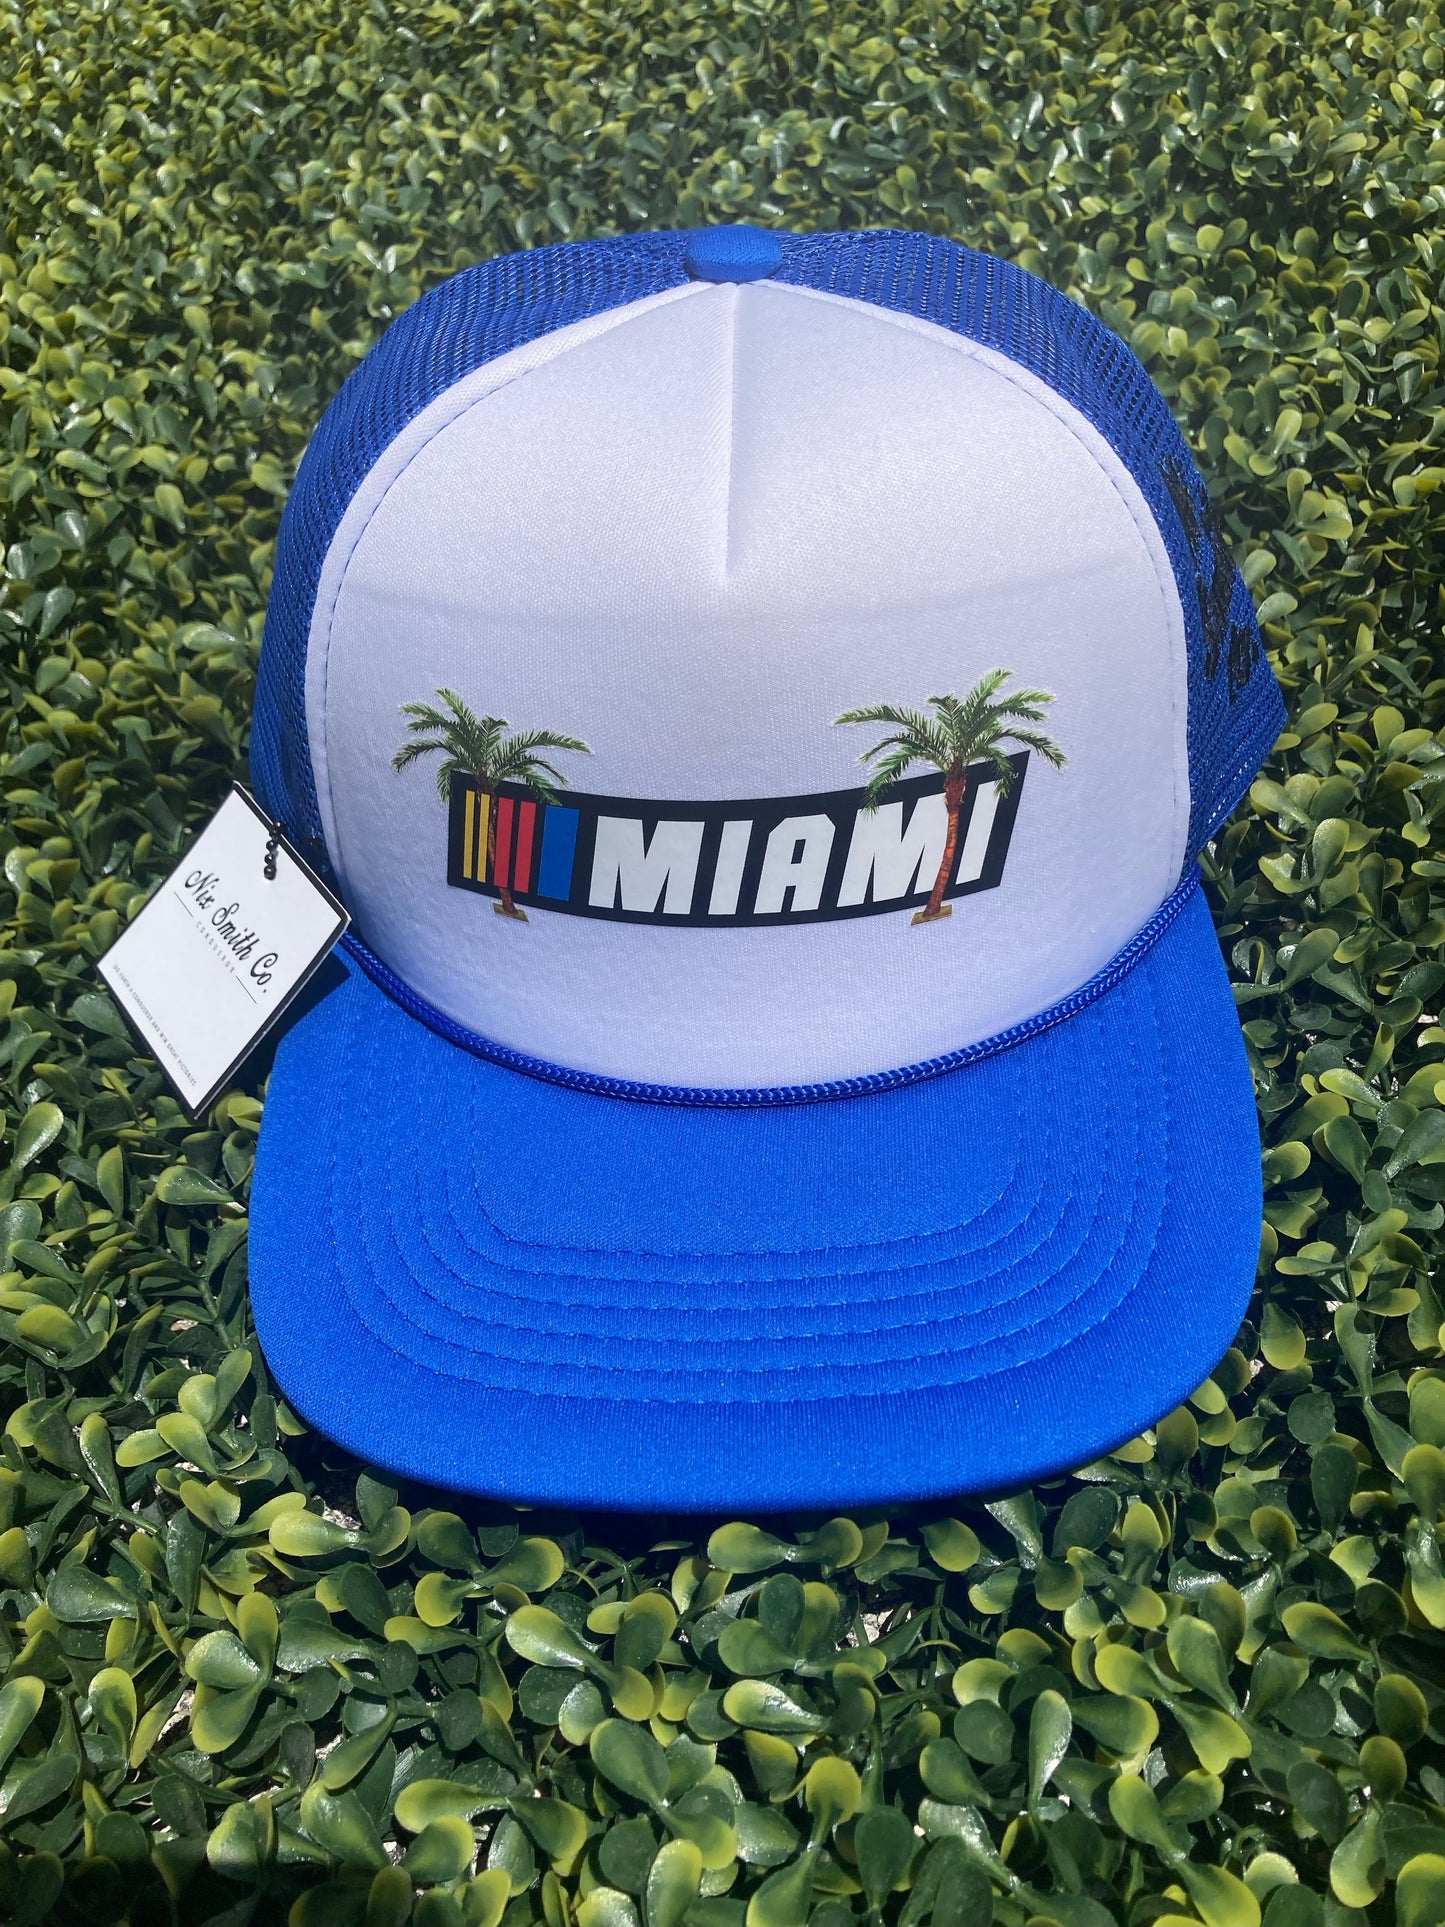 Miami Palm Trucker Hat (Royal/Wte)